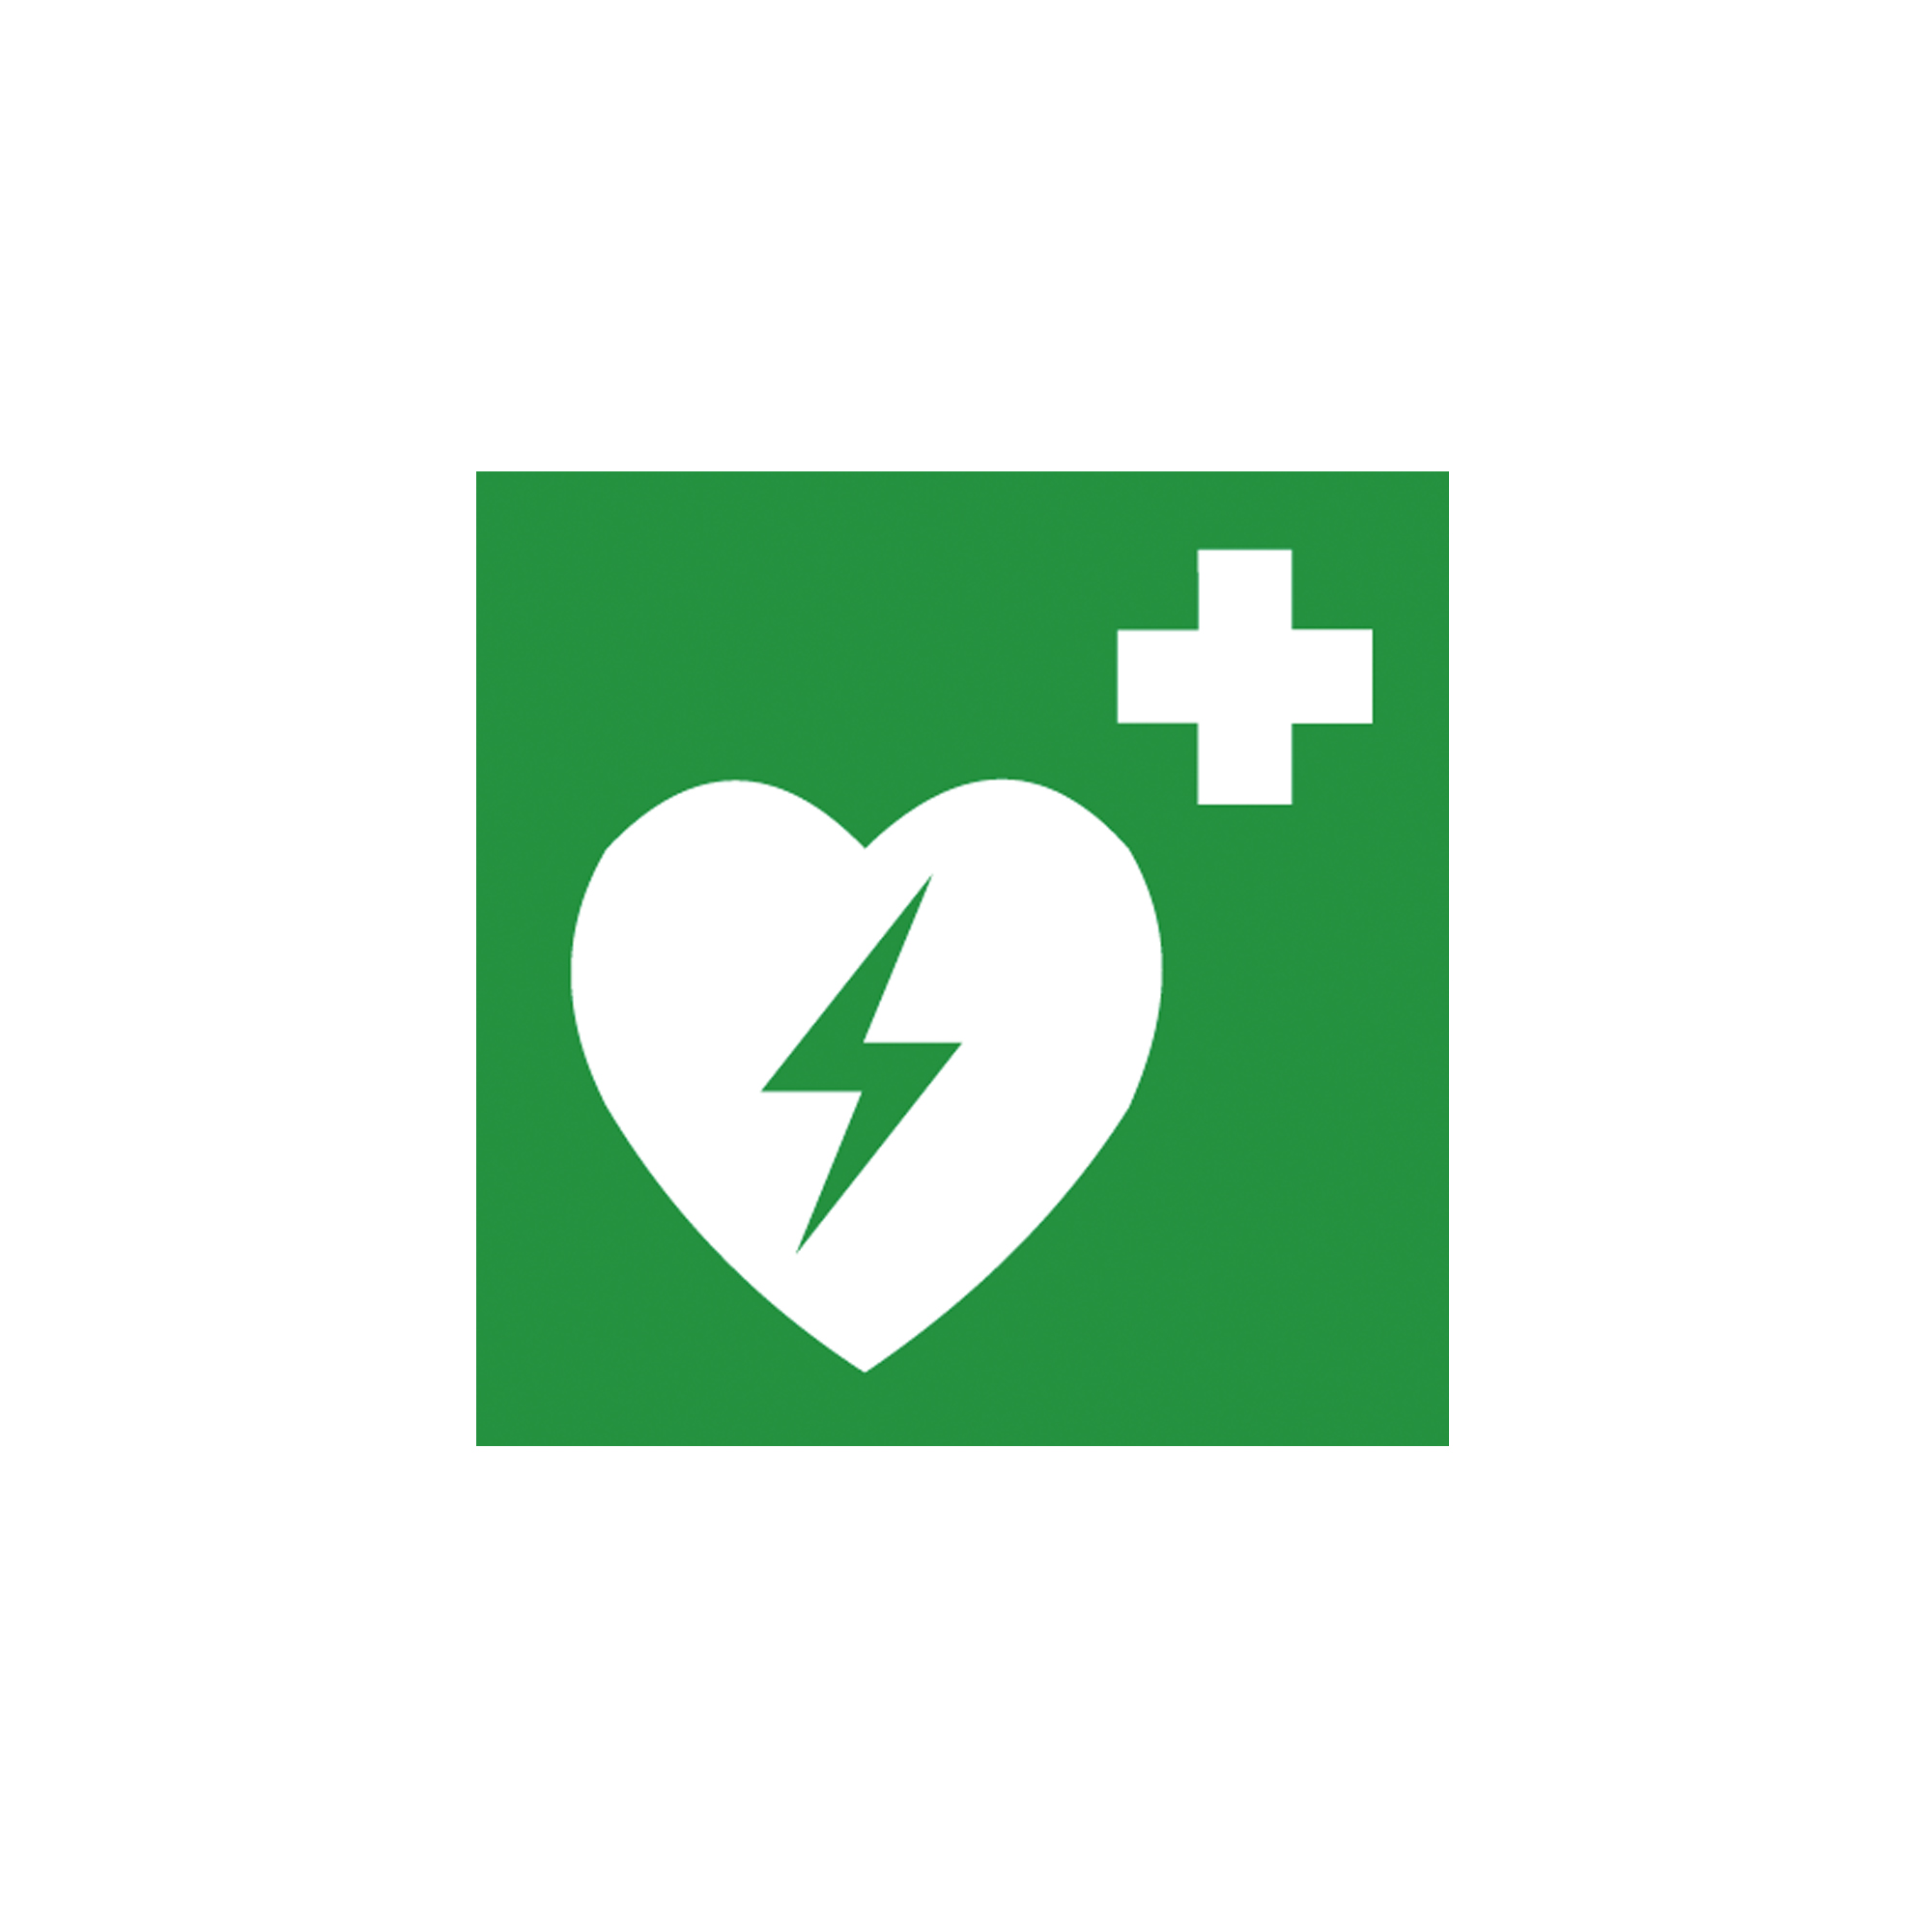 Rettungsschild als Symbol Defibrillator nach ISO 7010